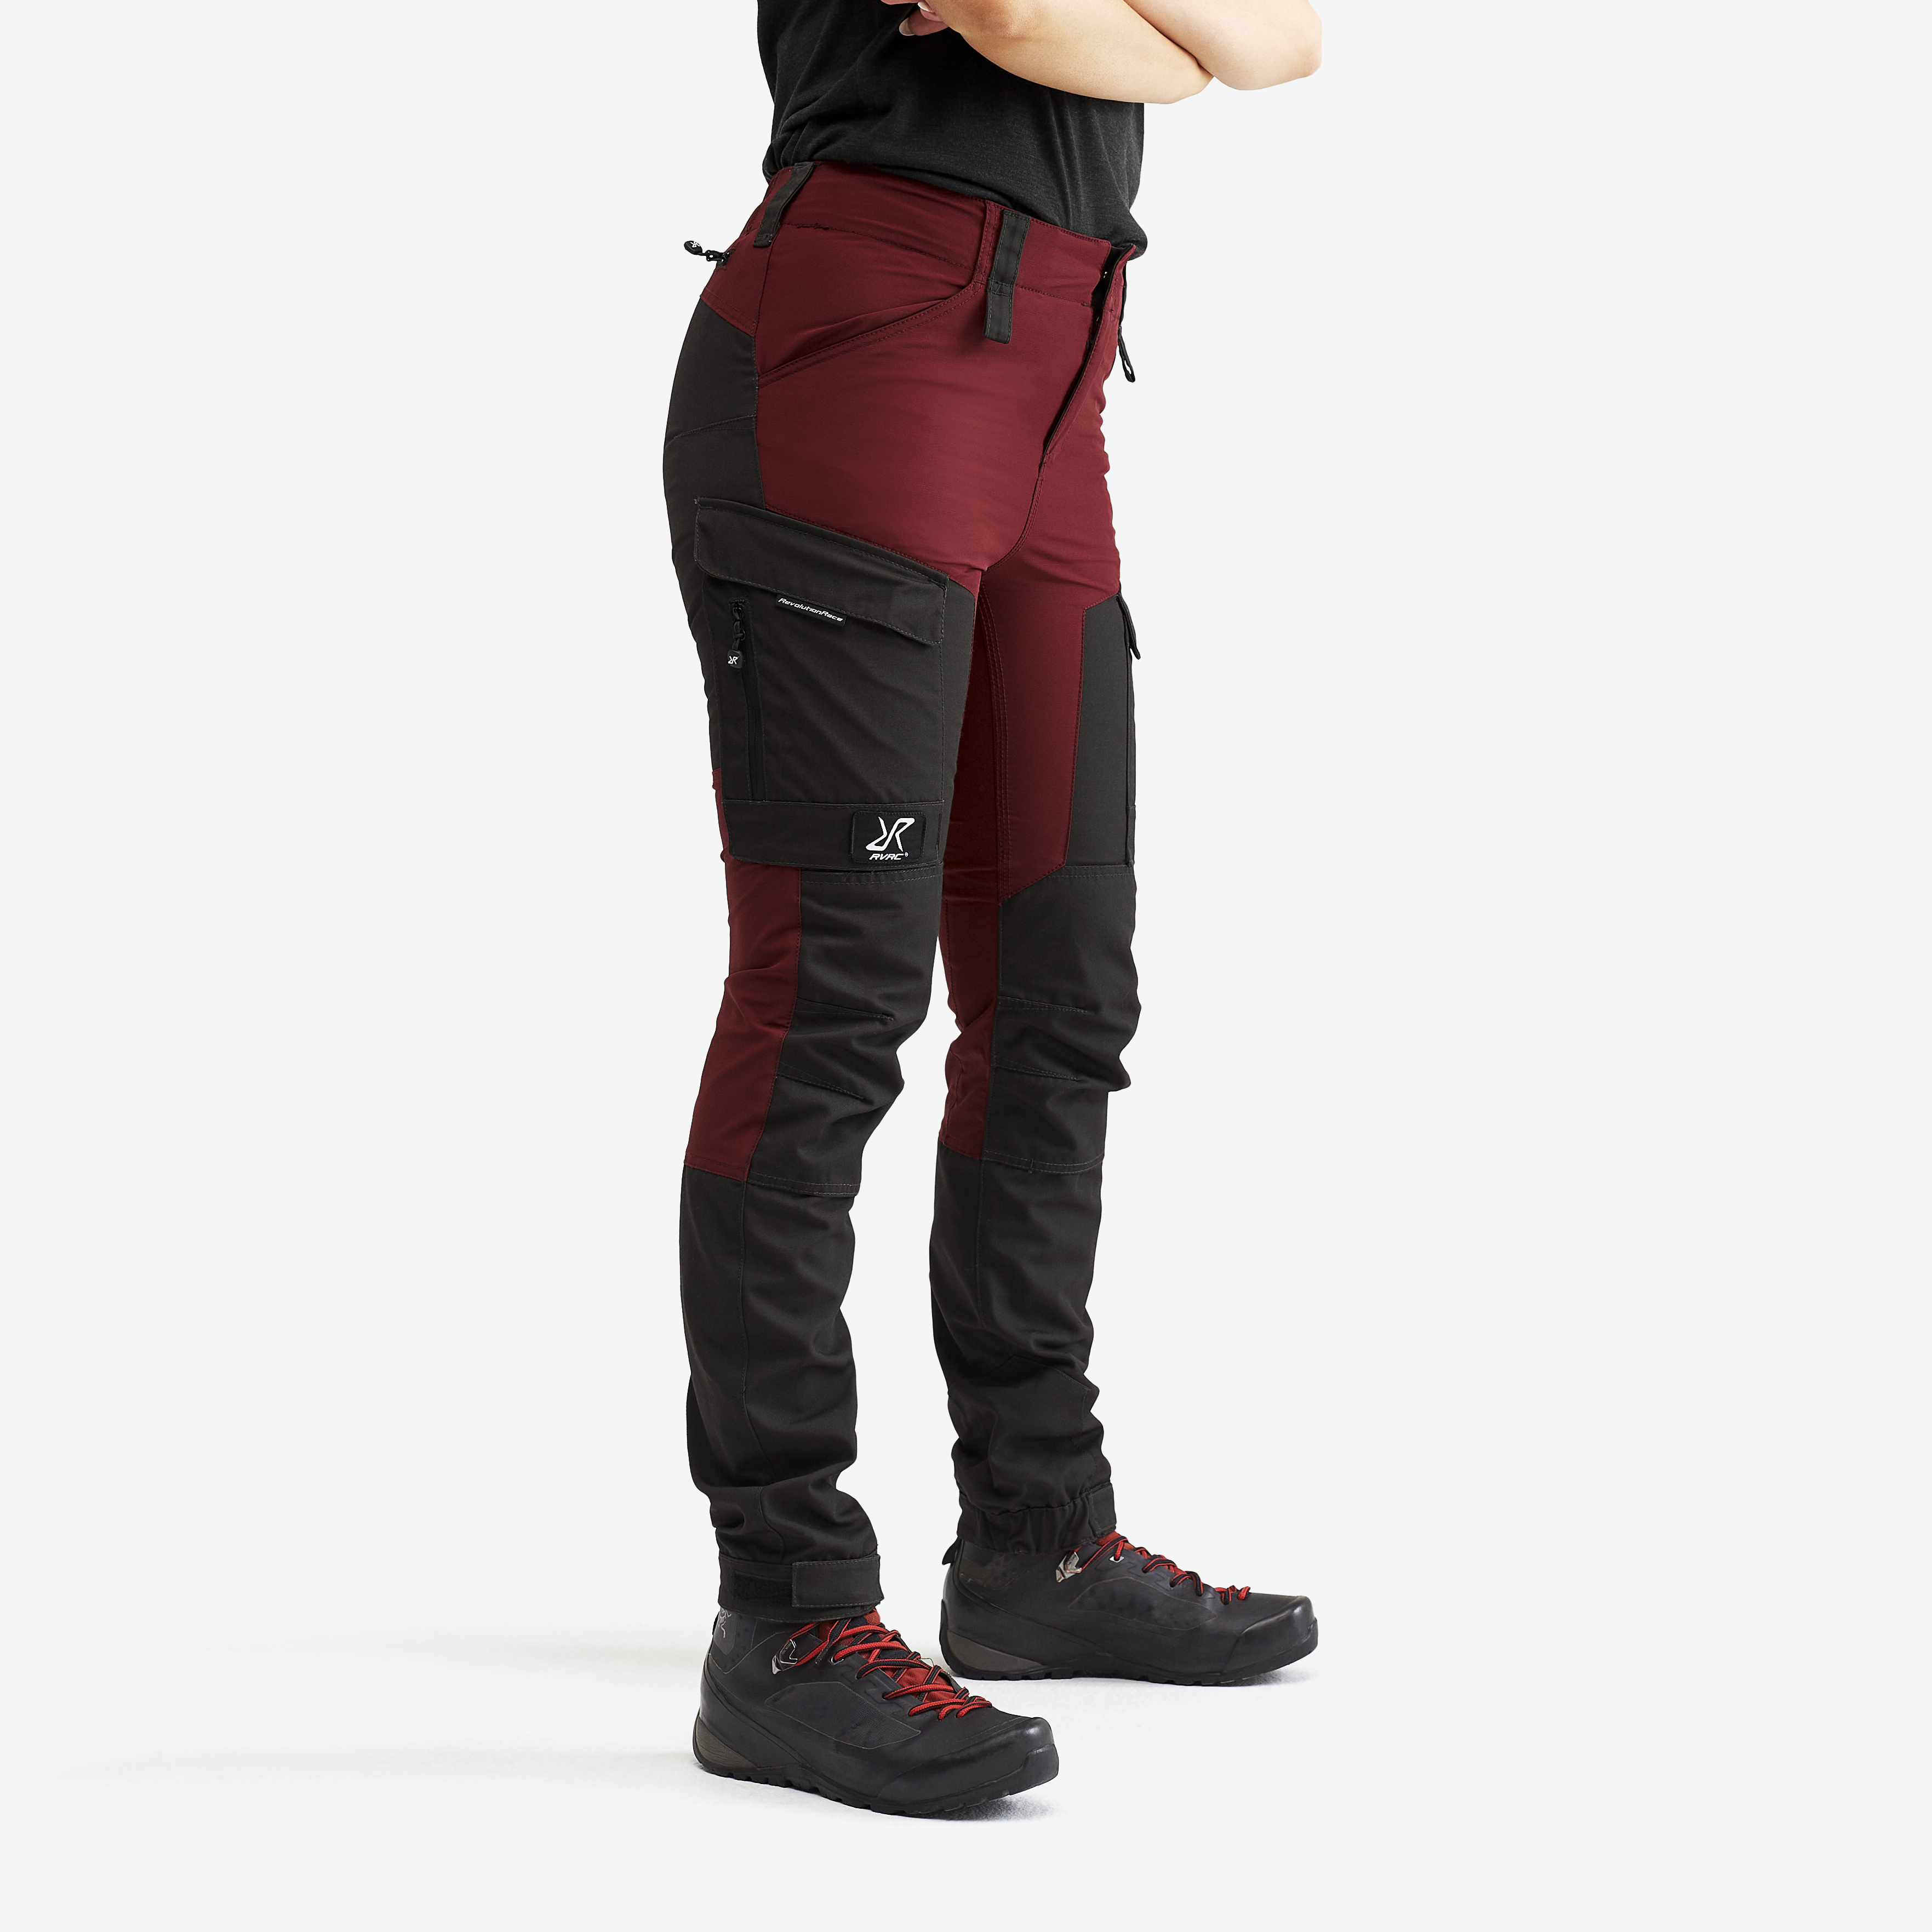 Pantalones outdoor RVRC GP para mujer en rojo oscuro